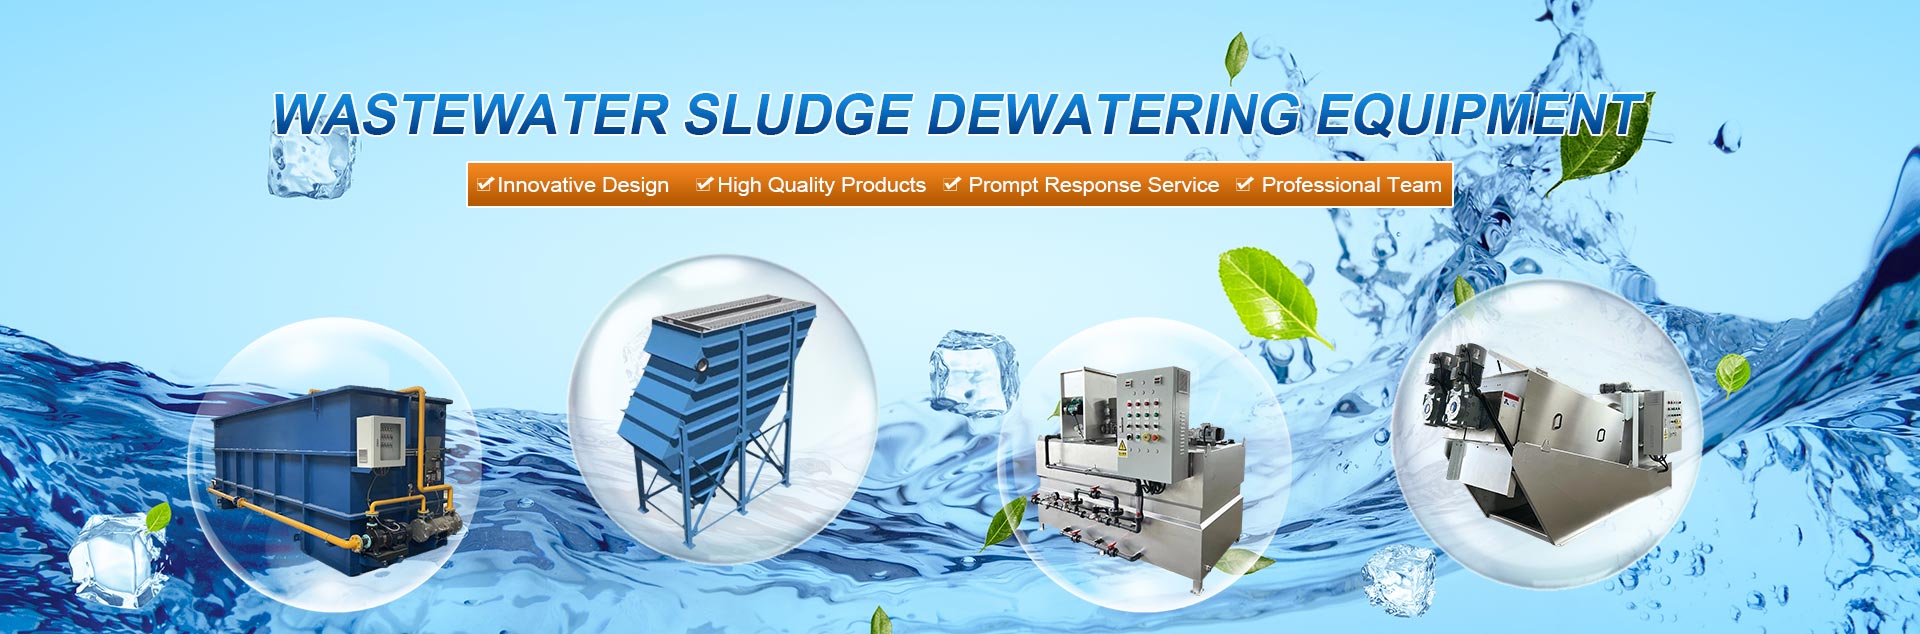 Wastewater Sludge Dewatering Equipment